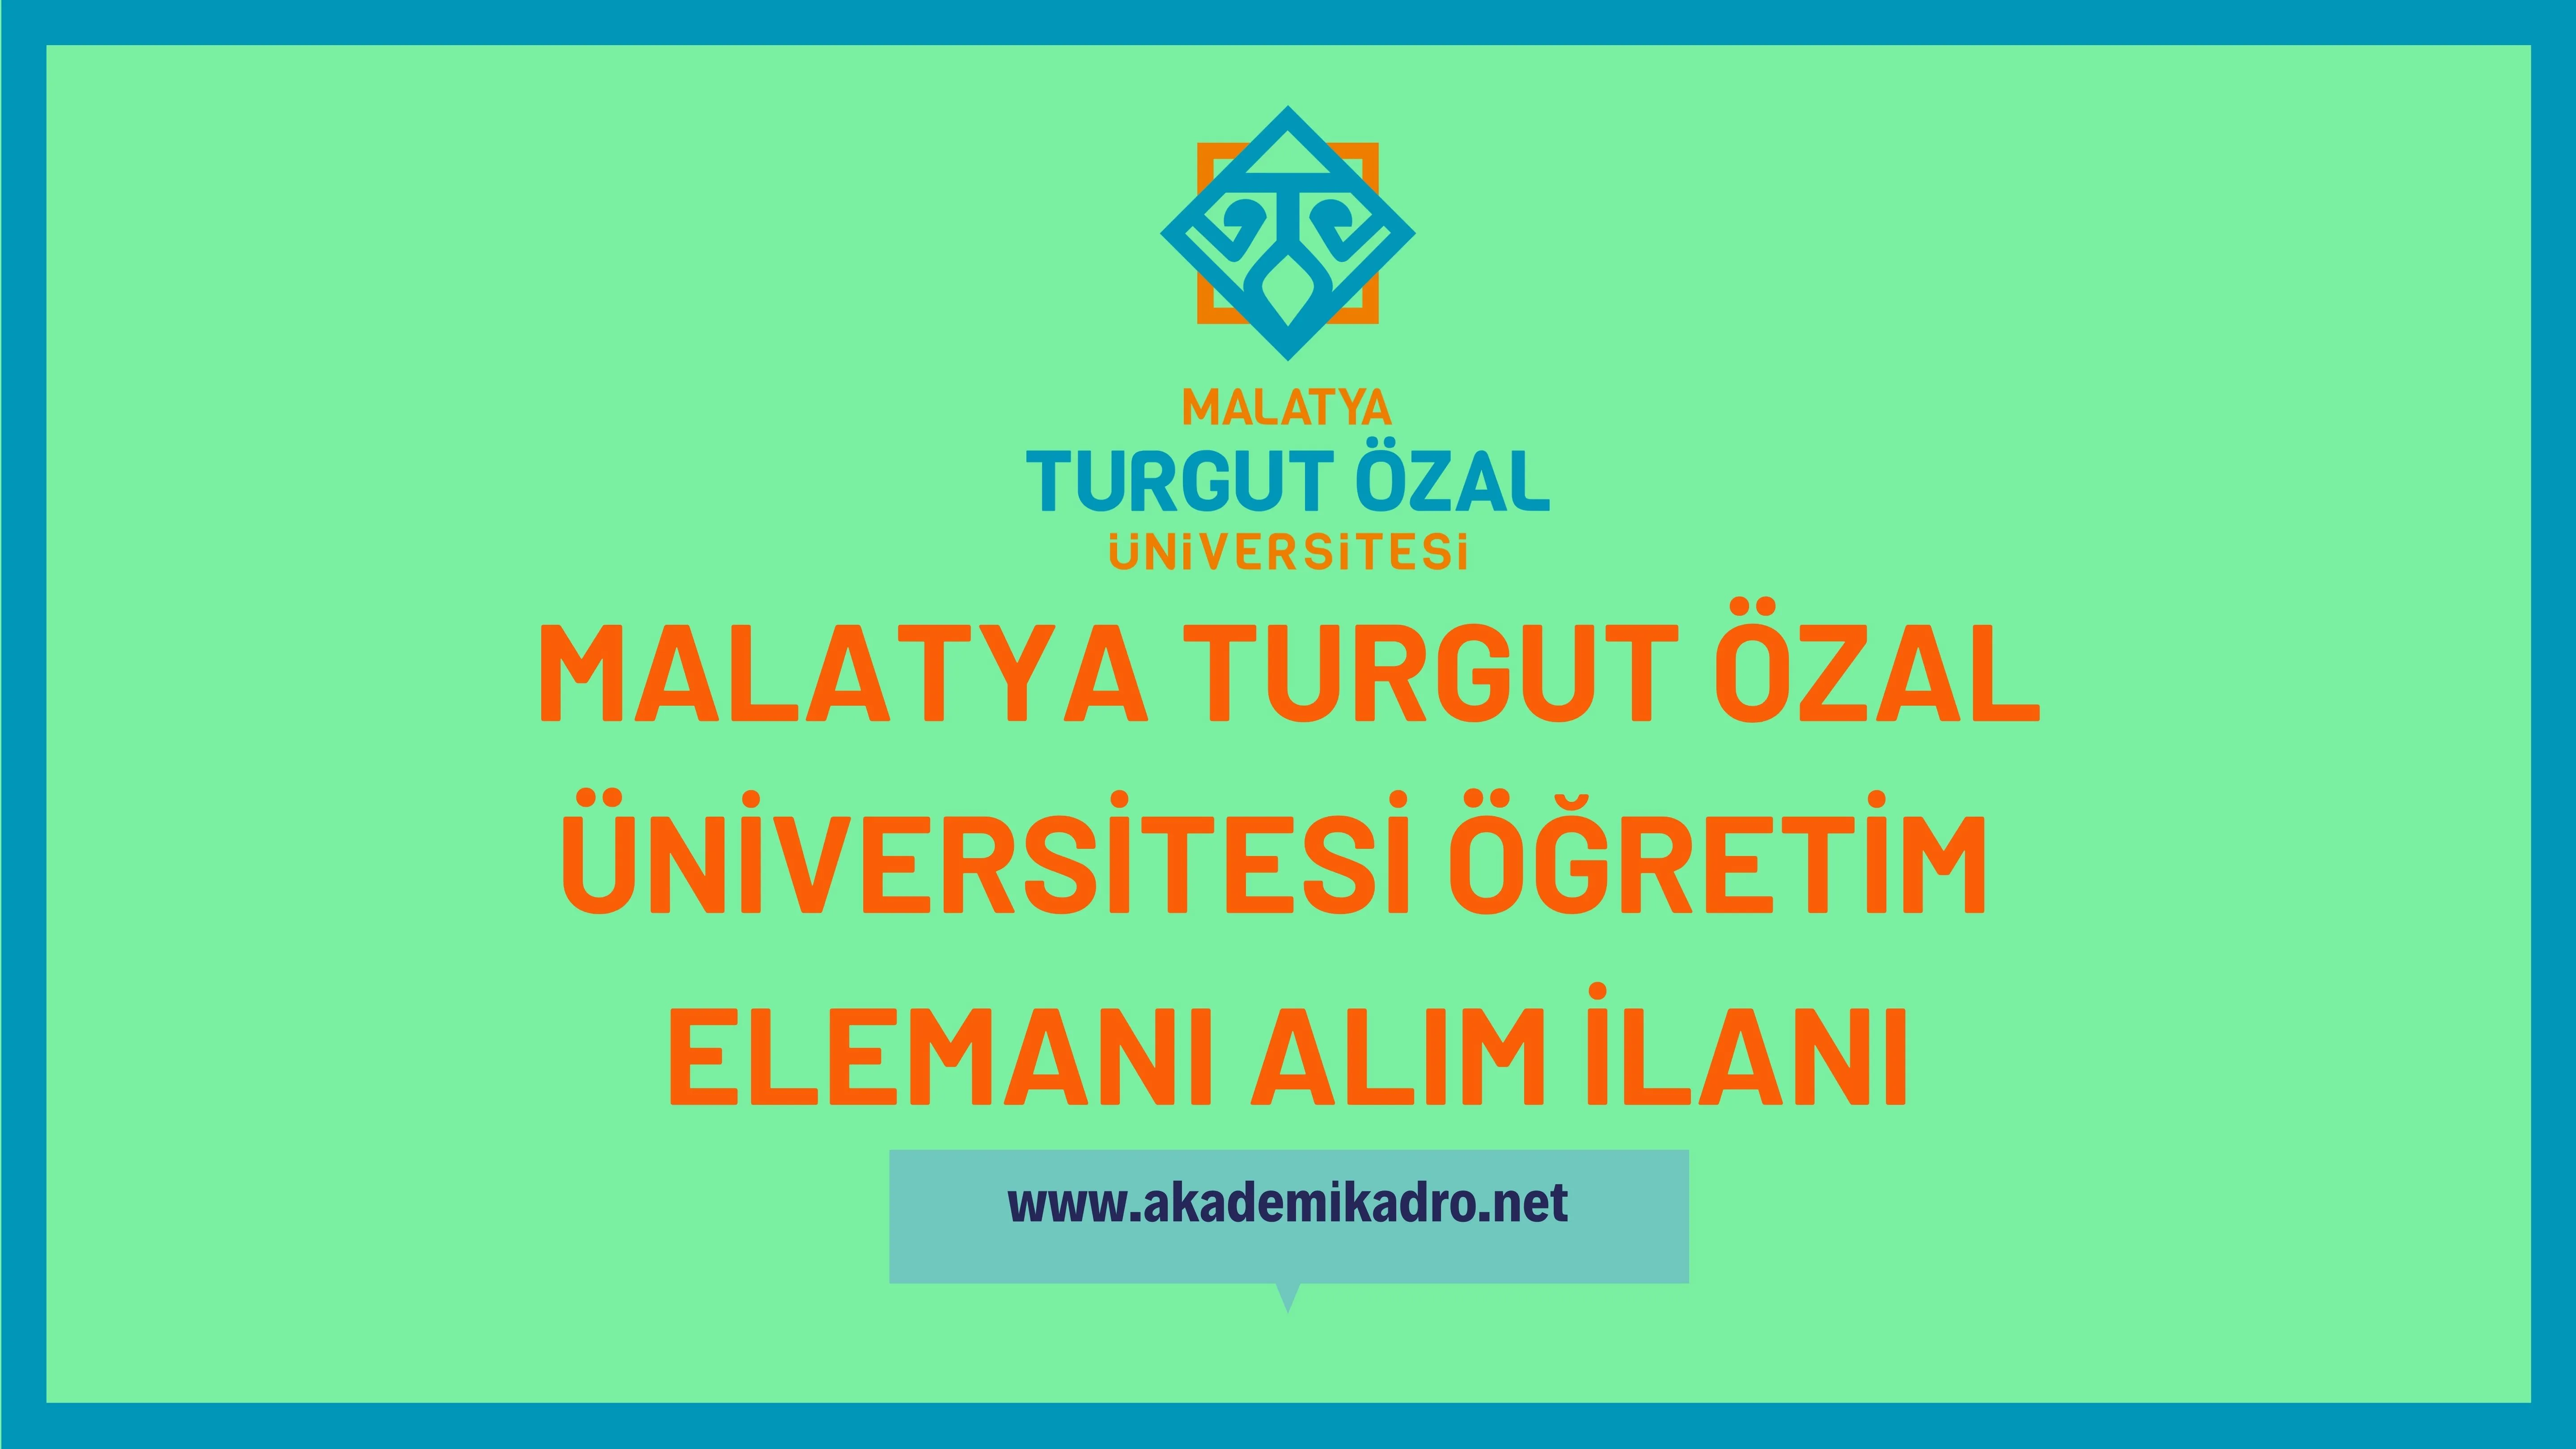 Malatya Turgut Özal Üniversitesi 5 Araştırma görevlisi, 9 Öğretim görevlisi ve 21 Öğretim üyesi alacak.